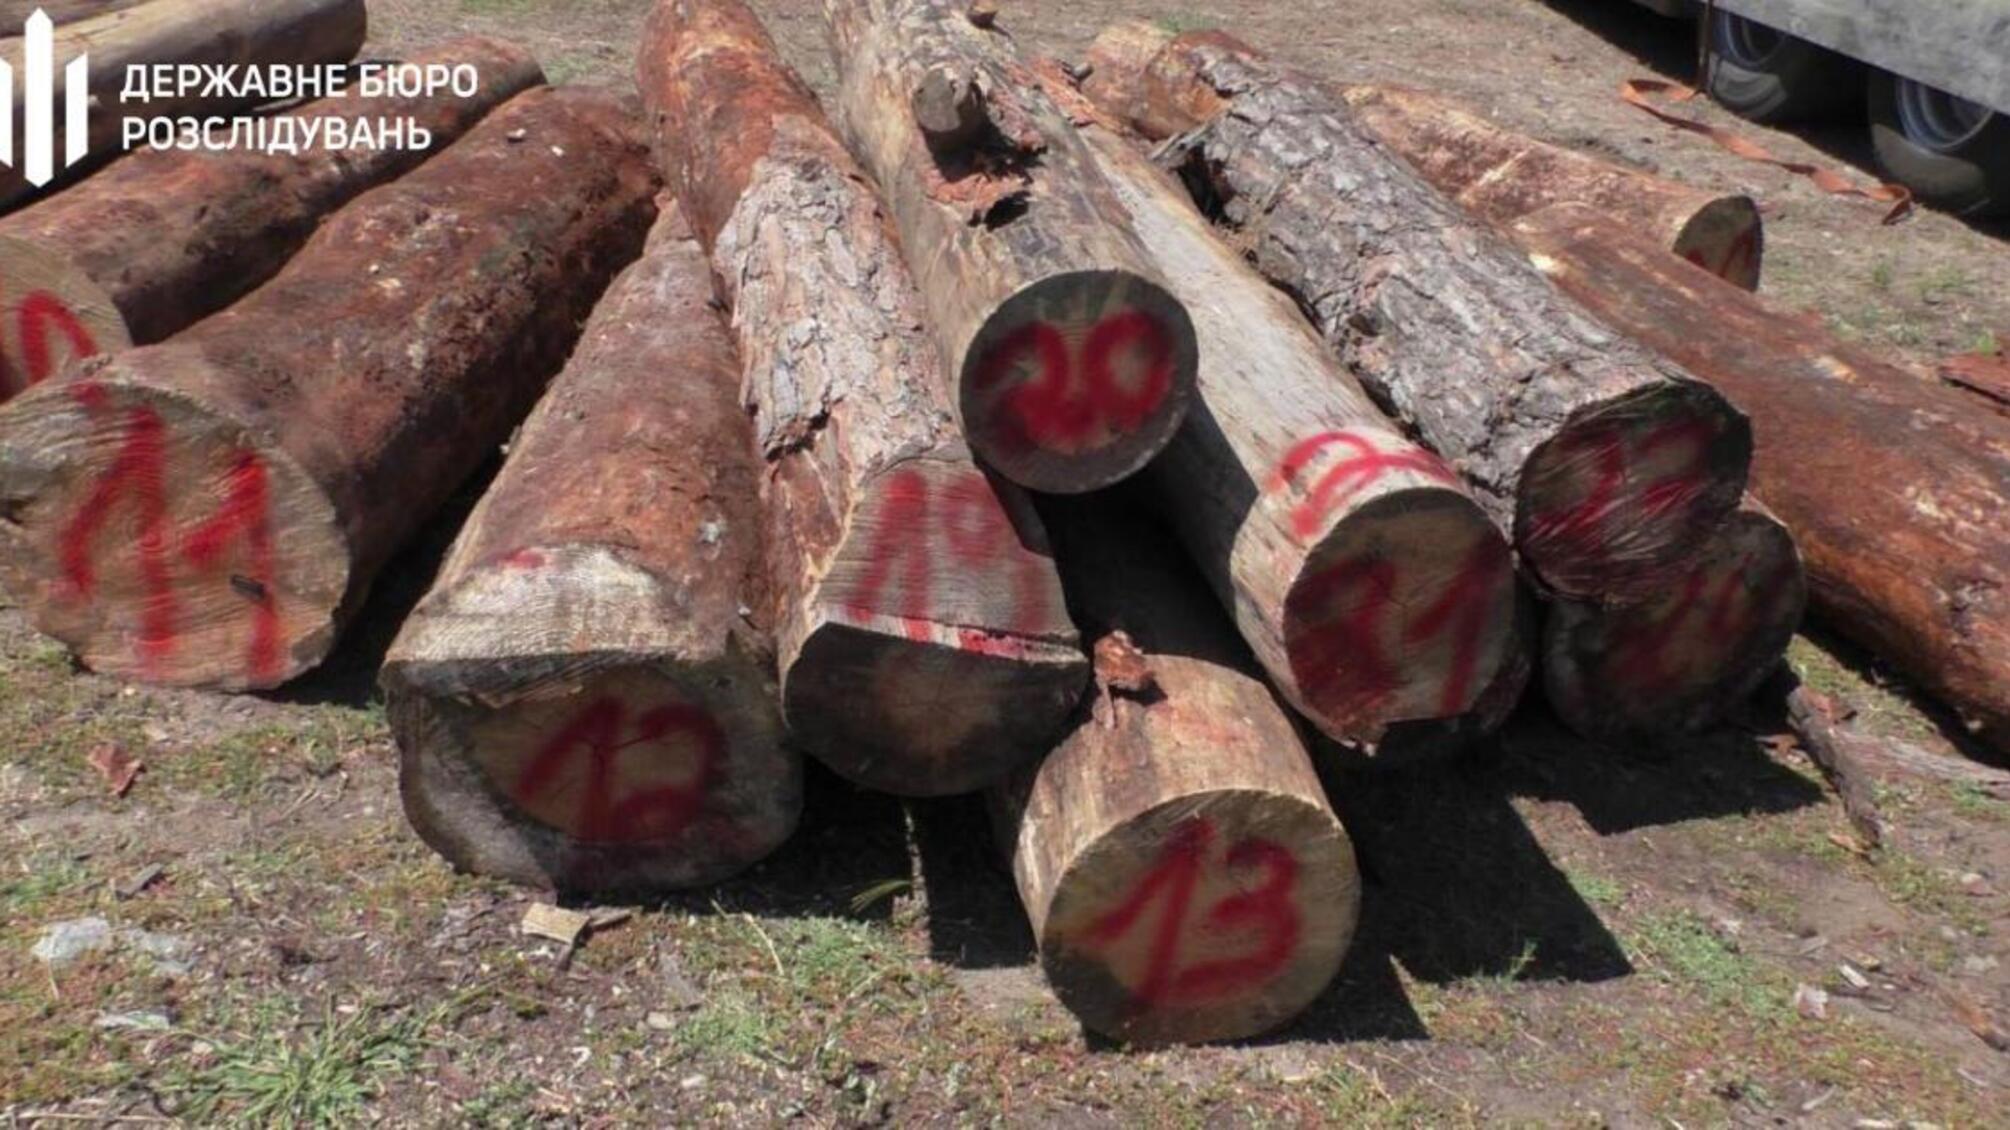 360 тис грн хабара за продаж ділової деревини – директор ДП постане перед судом